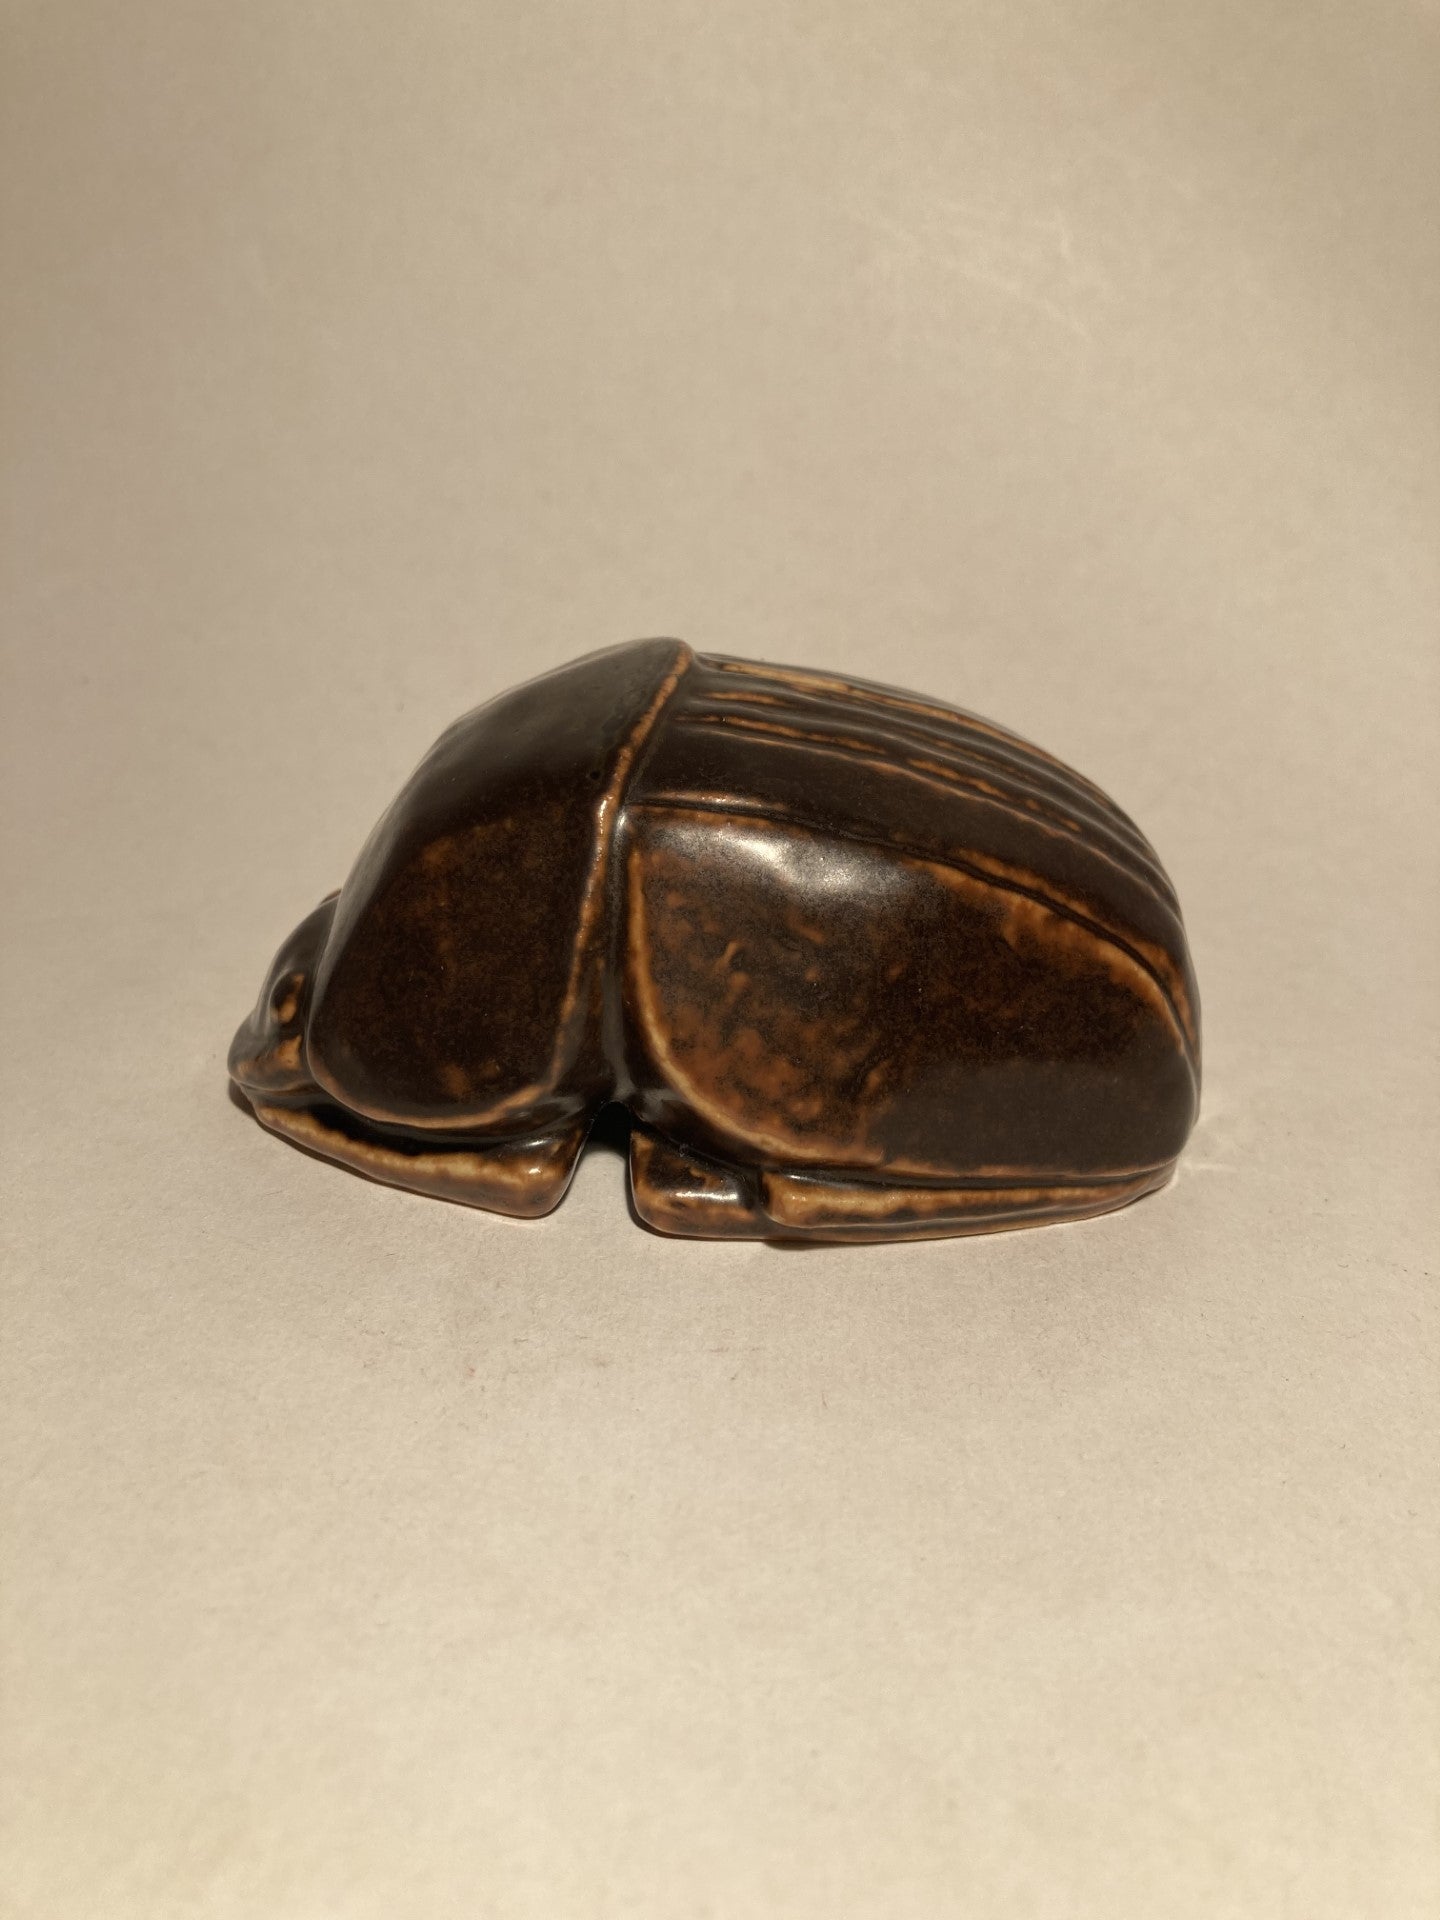 ビングとグロンダール産の石器の珍しいエジプト産スカラベ - no. 01320